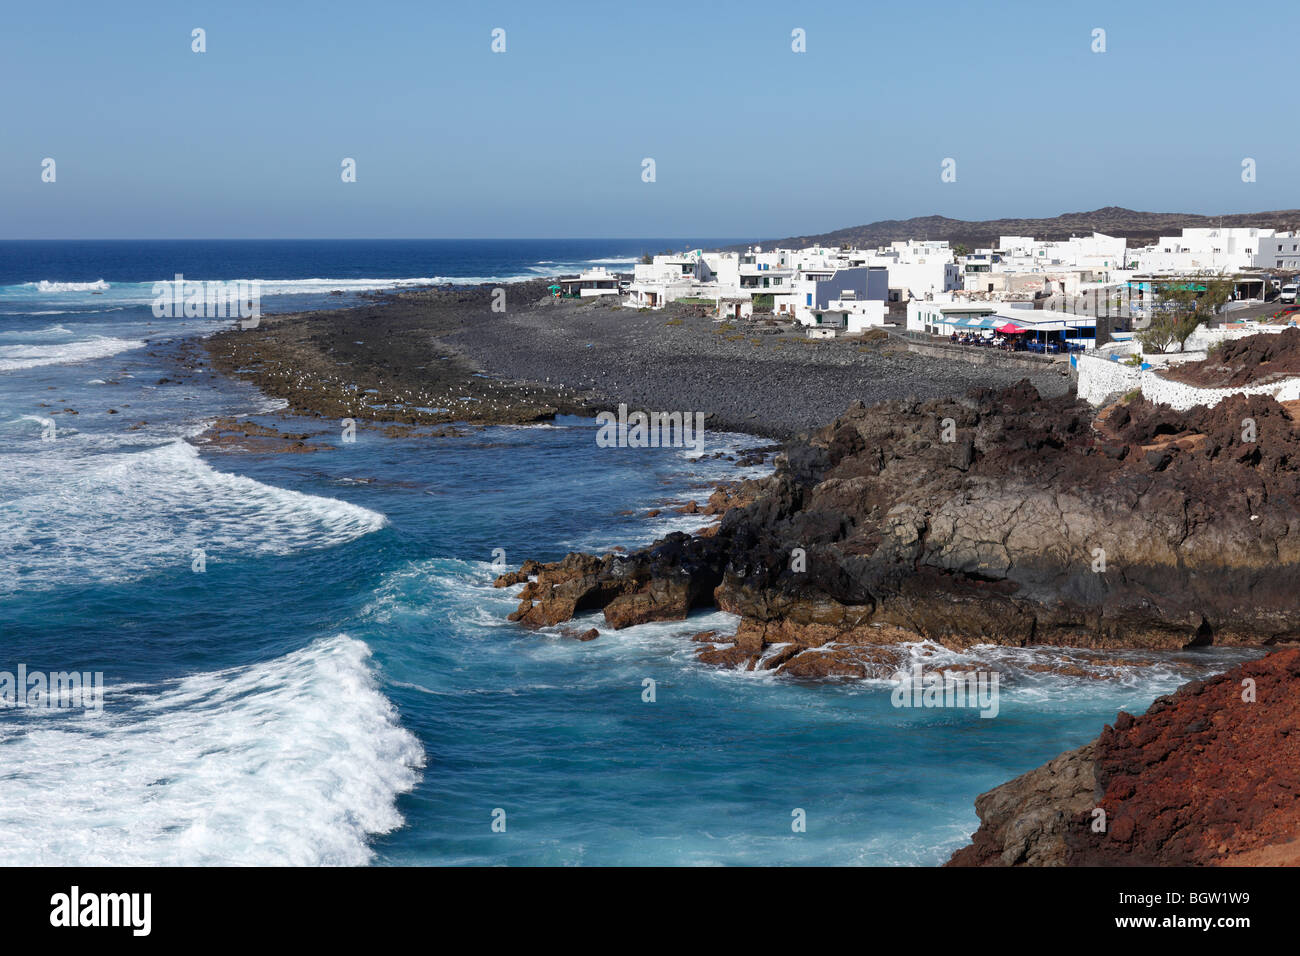 El Golfo, Lanzarote, Canary Islands, Spain, Europe Stock Photo